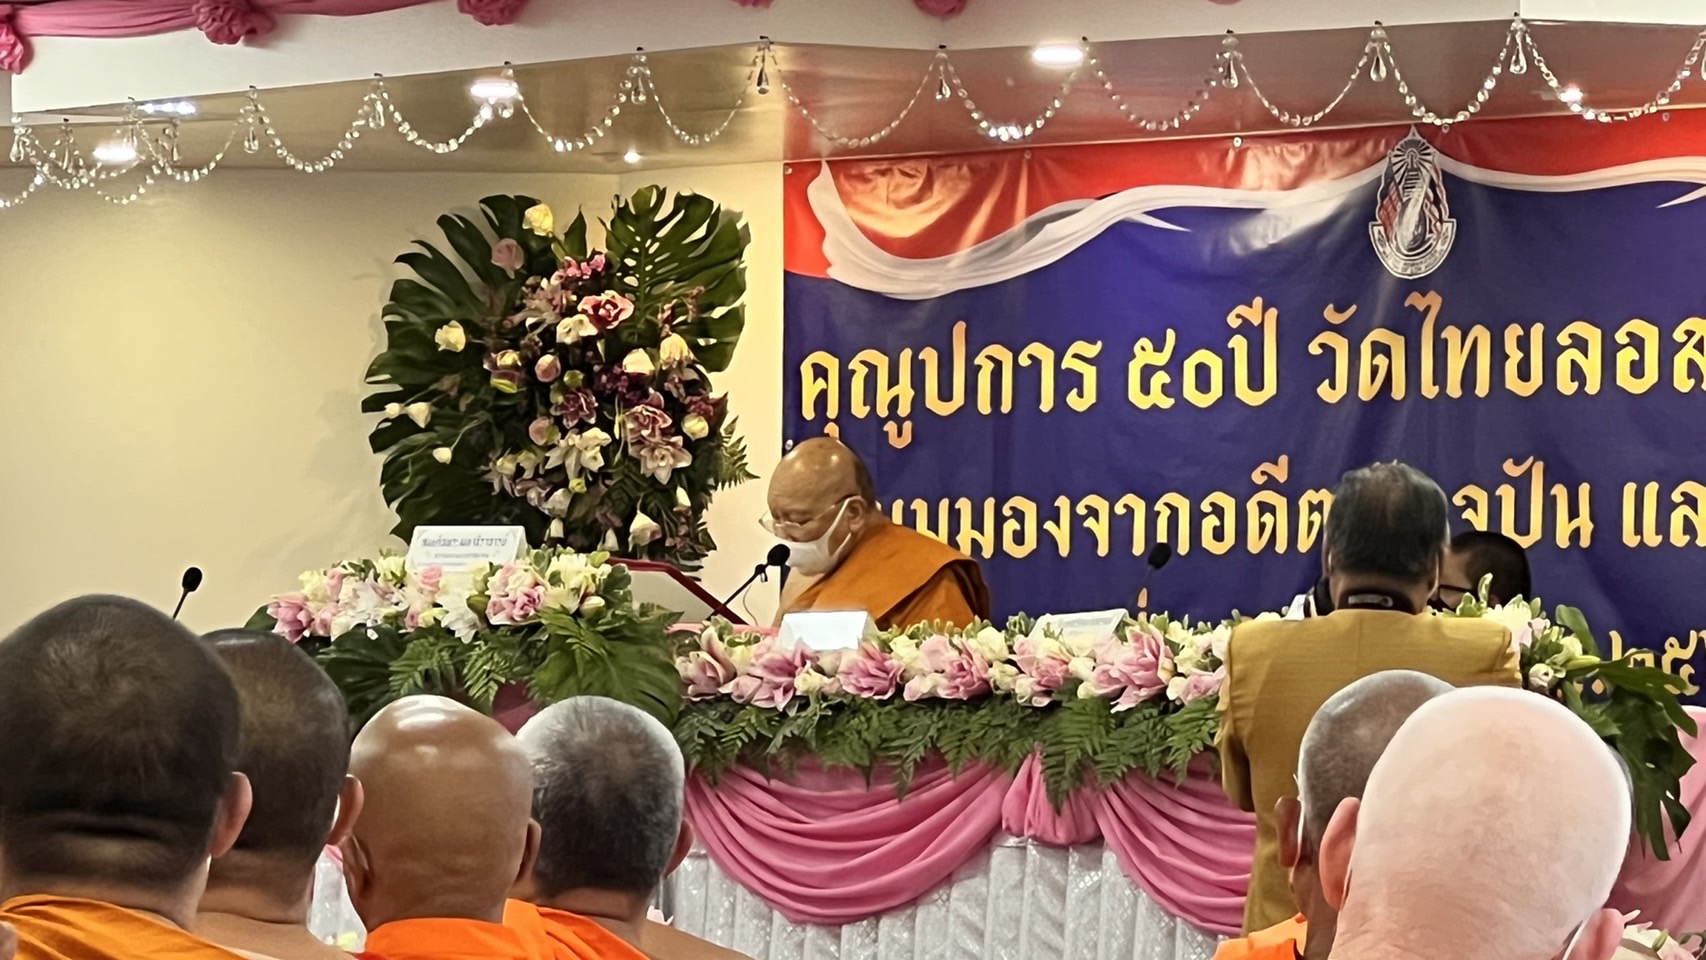 “สมเด็จธีร์” ประชุมสมัชชาสงฆ์ไทยในอเมริกา – องค์กรพระธรรมทูตไทย “ครั้งแรกในรอบ 2 ปี”